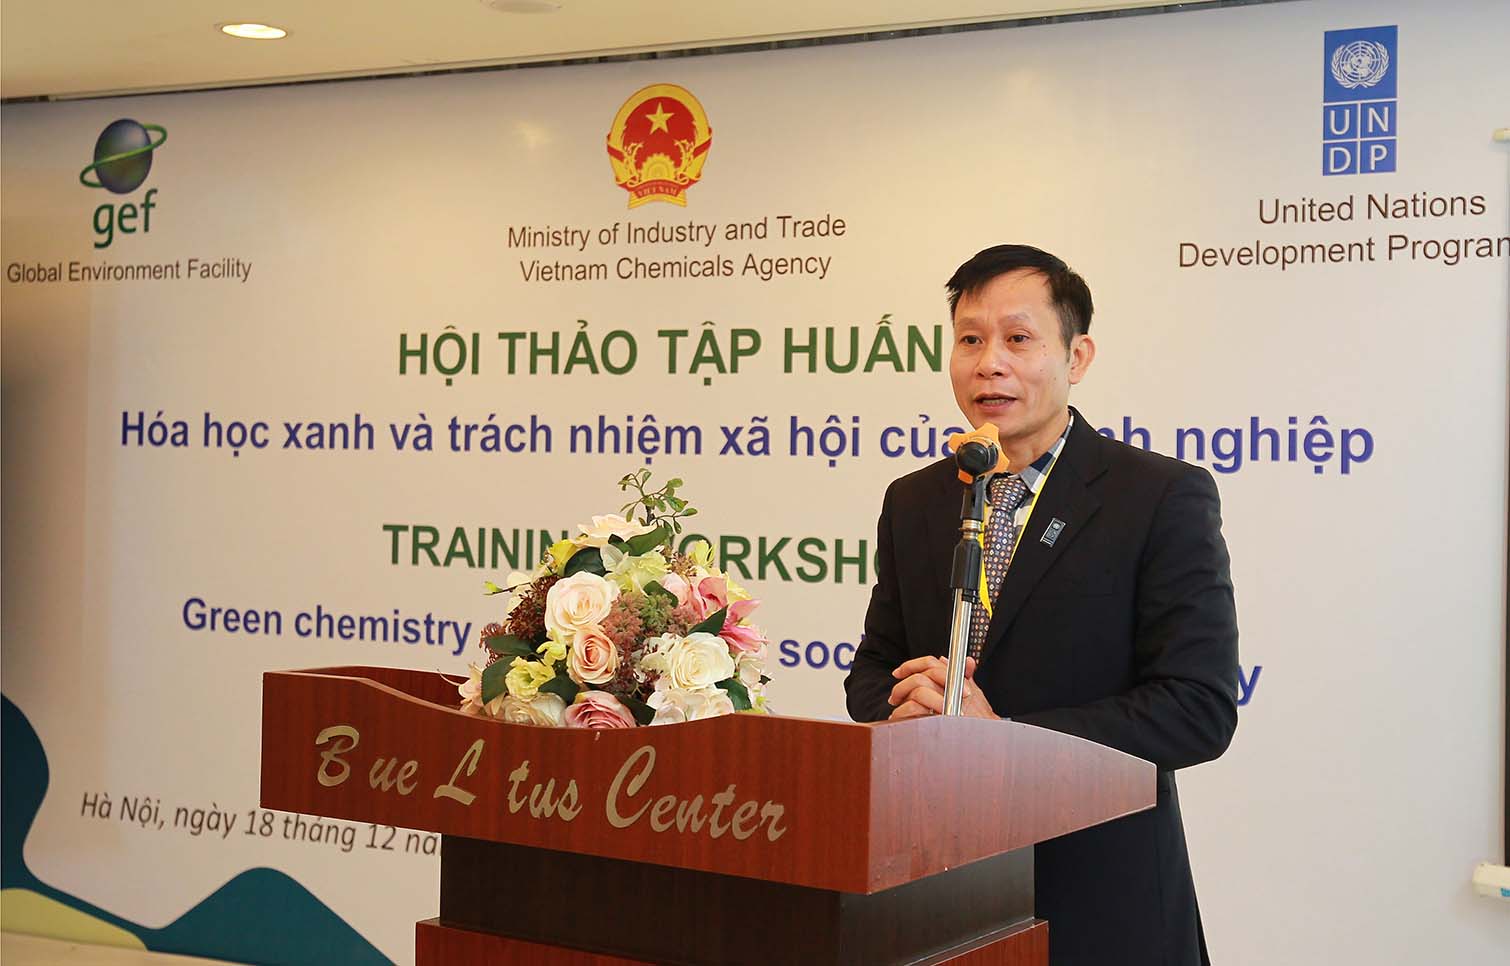 Ông Đào Xuân Lai – Trưởng phòng Biến đổi khí hậu và Môi trường, Trợ lý Trưởng đại diện thường trú UNDP phát biểu khai mạc hội thảo.